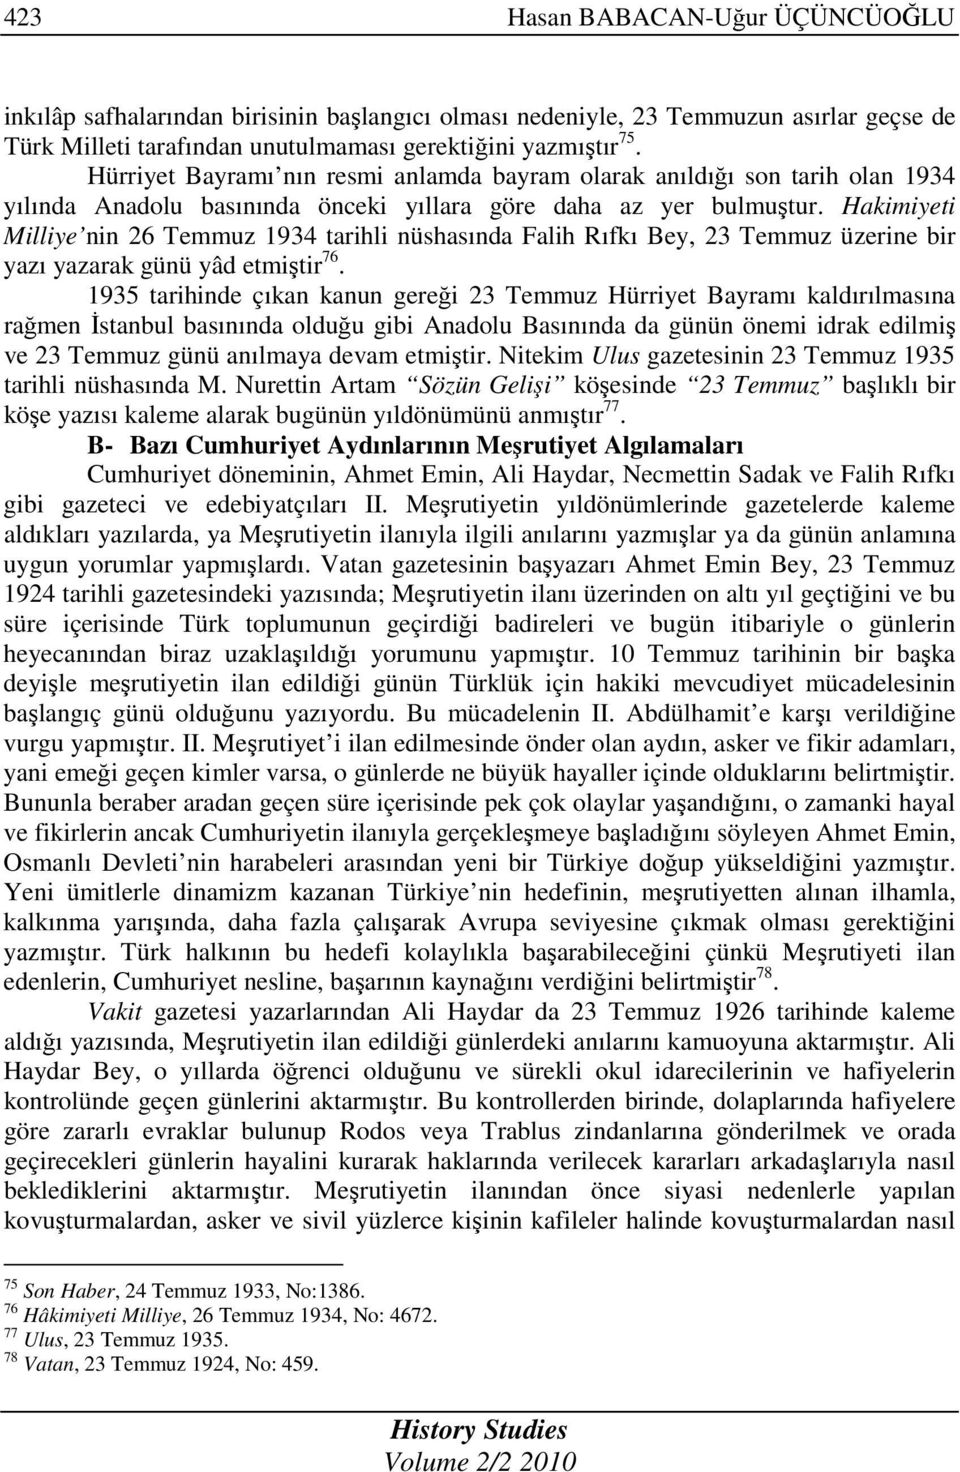 Hakimiyeti Milliye nin 26 Temmuz 1934 tarihli nüshasında Falih Rıfkı Bey, 23 Temmuz üzerine bir yazı yazarak günü yâd etmiştir 76.